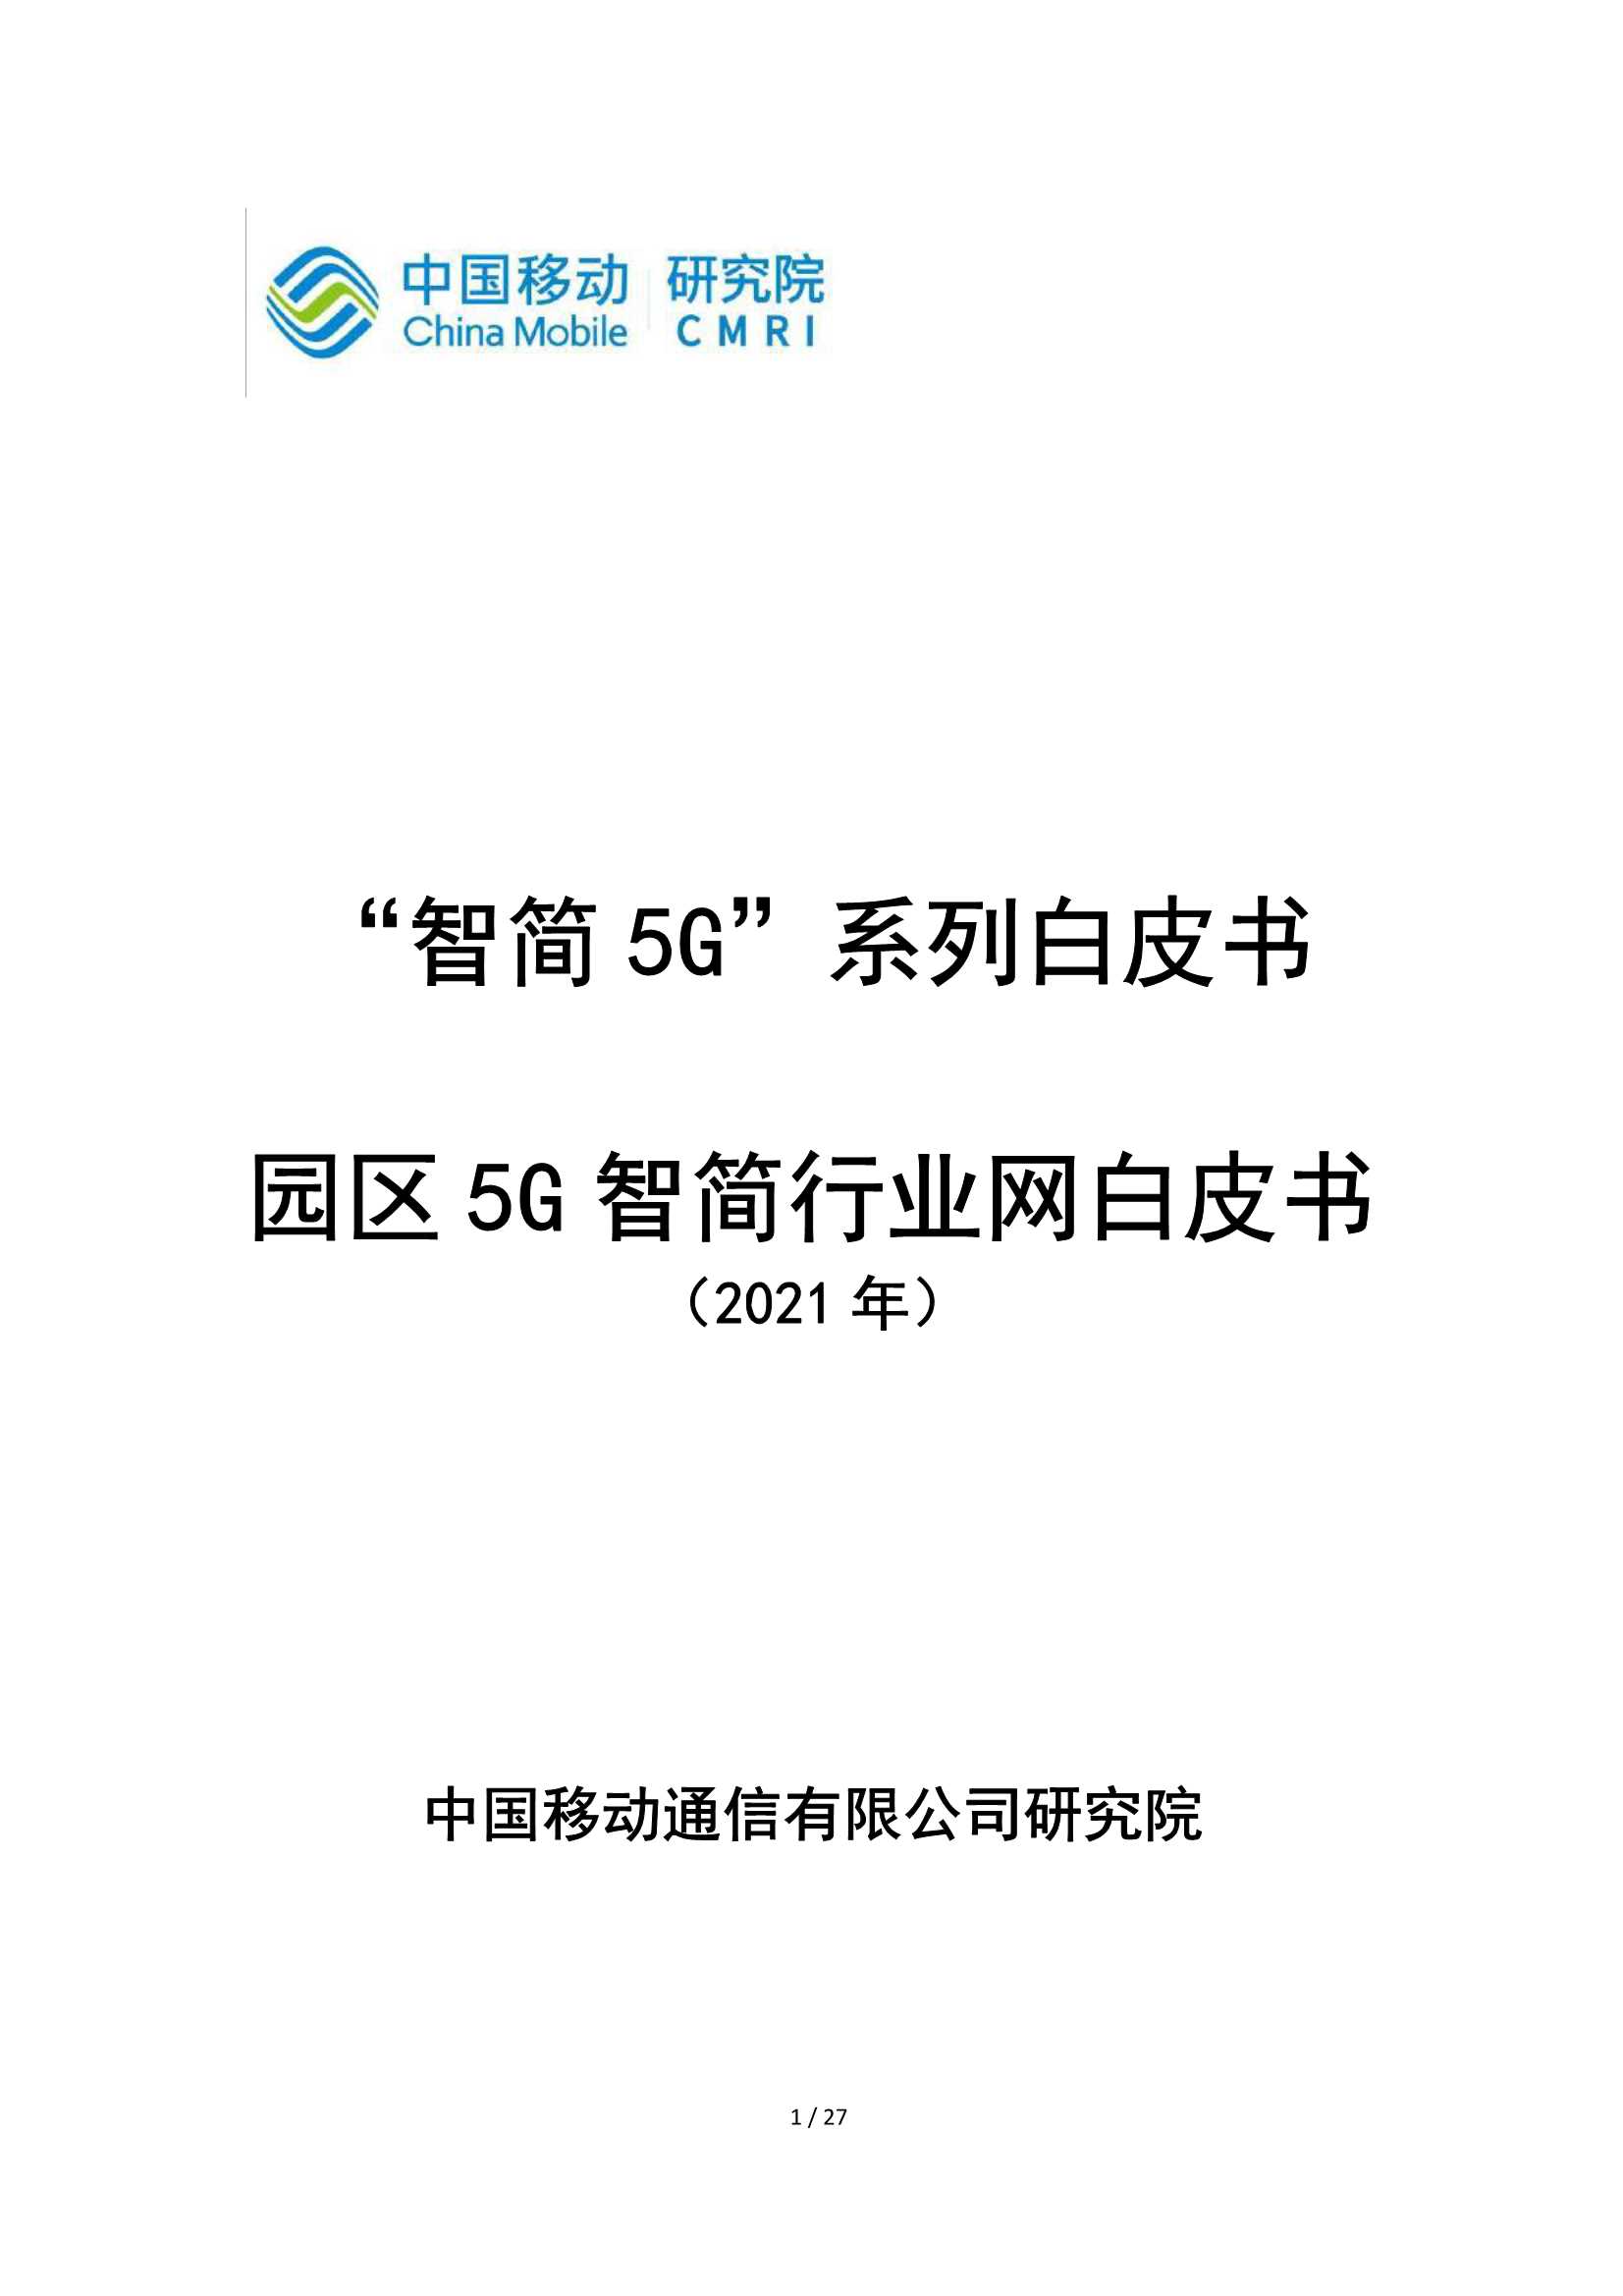 中国移动-园区5G智简行业网白皮书-2021.05-27页